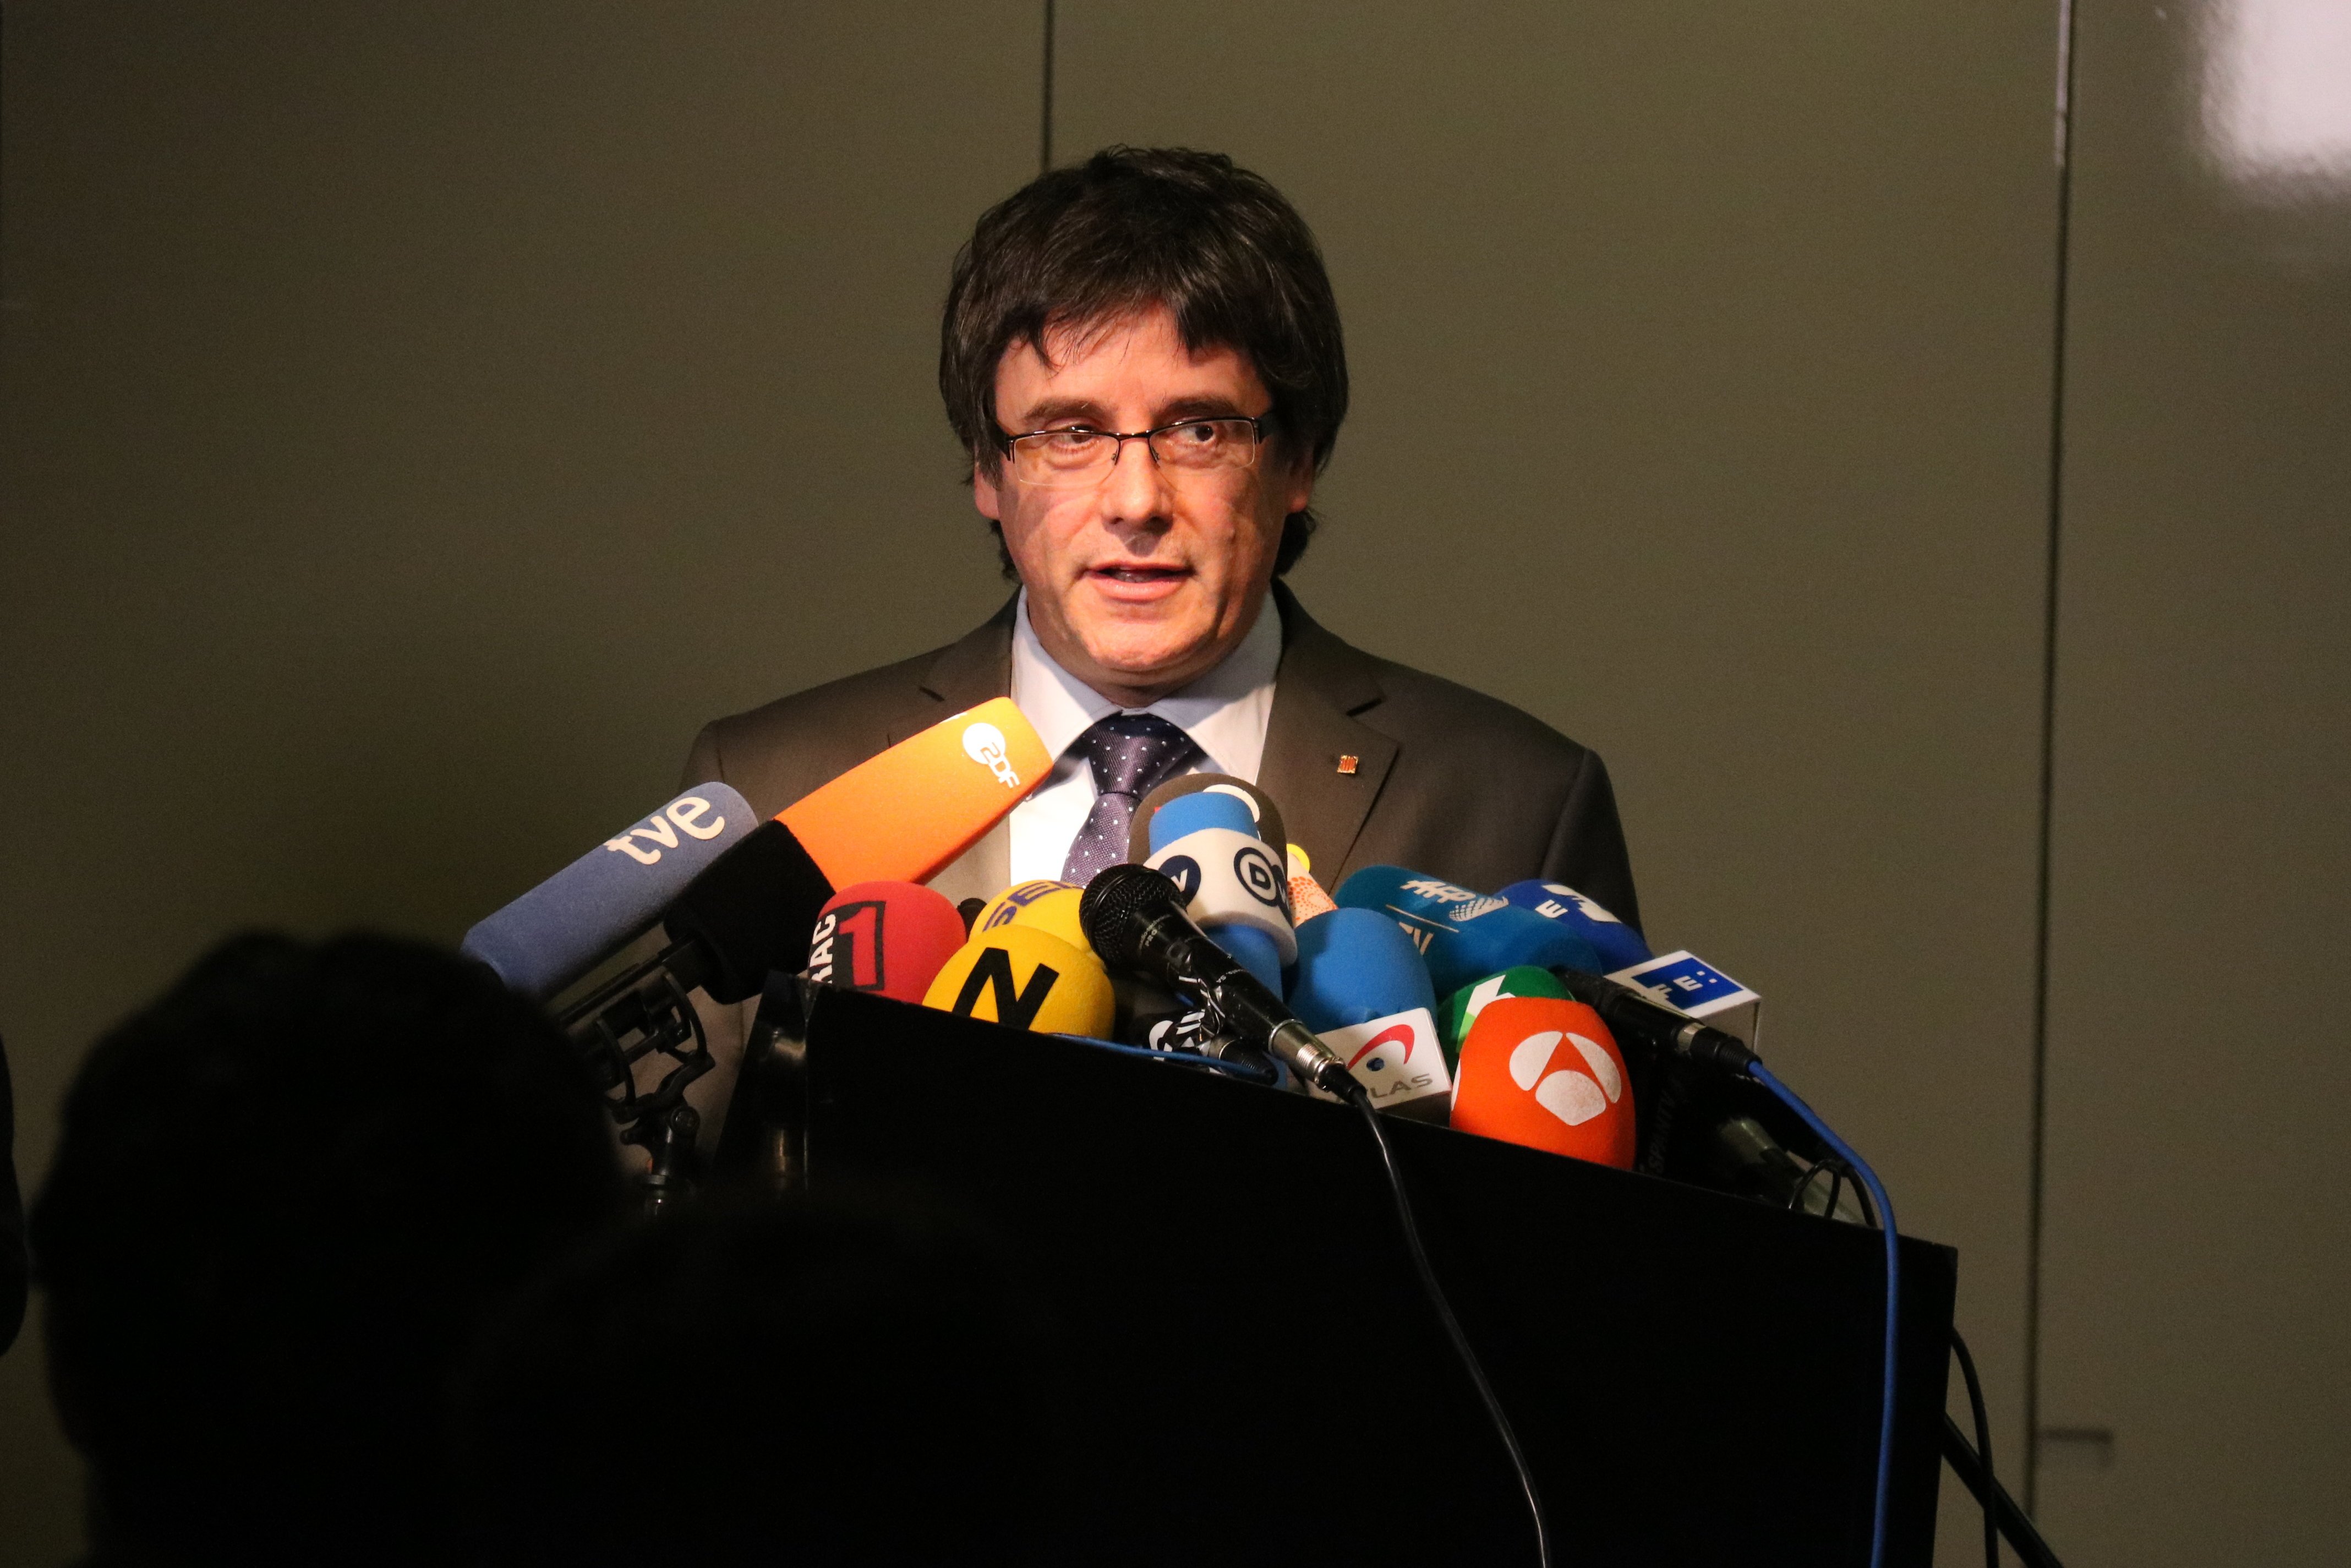 El entorno de Puigdemont valora positivamente el pronunciamiento de la justicia alemana